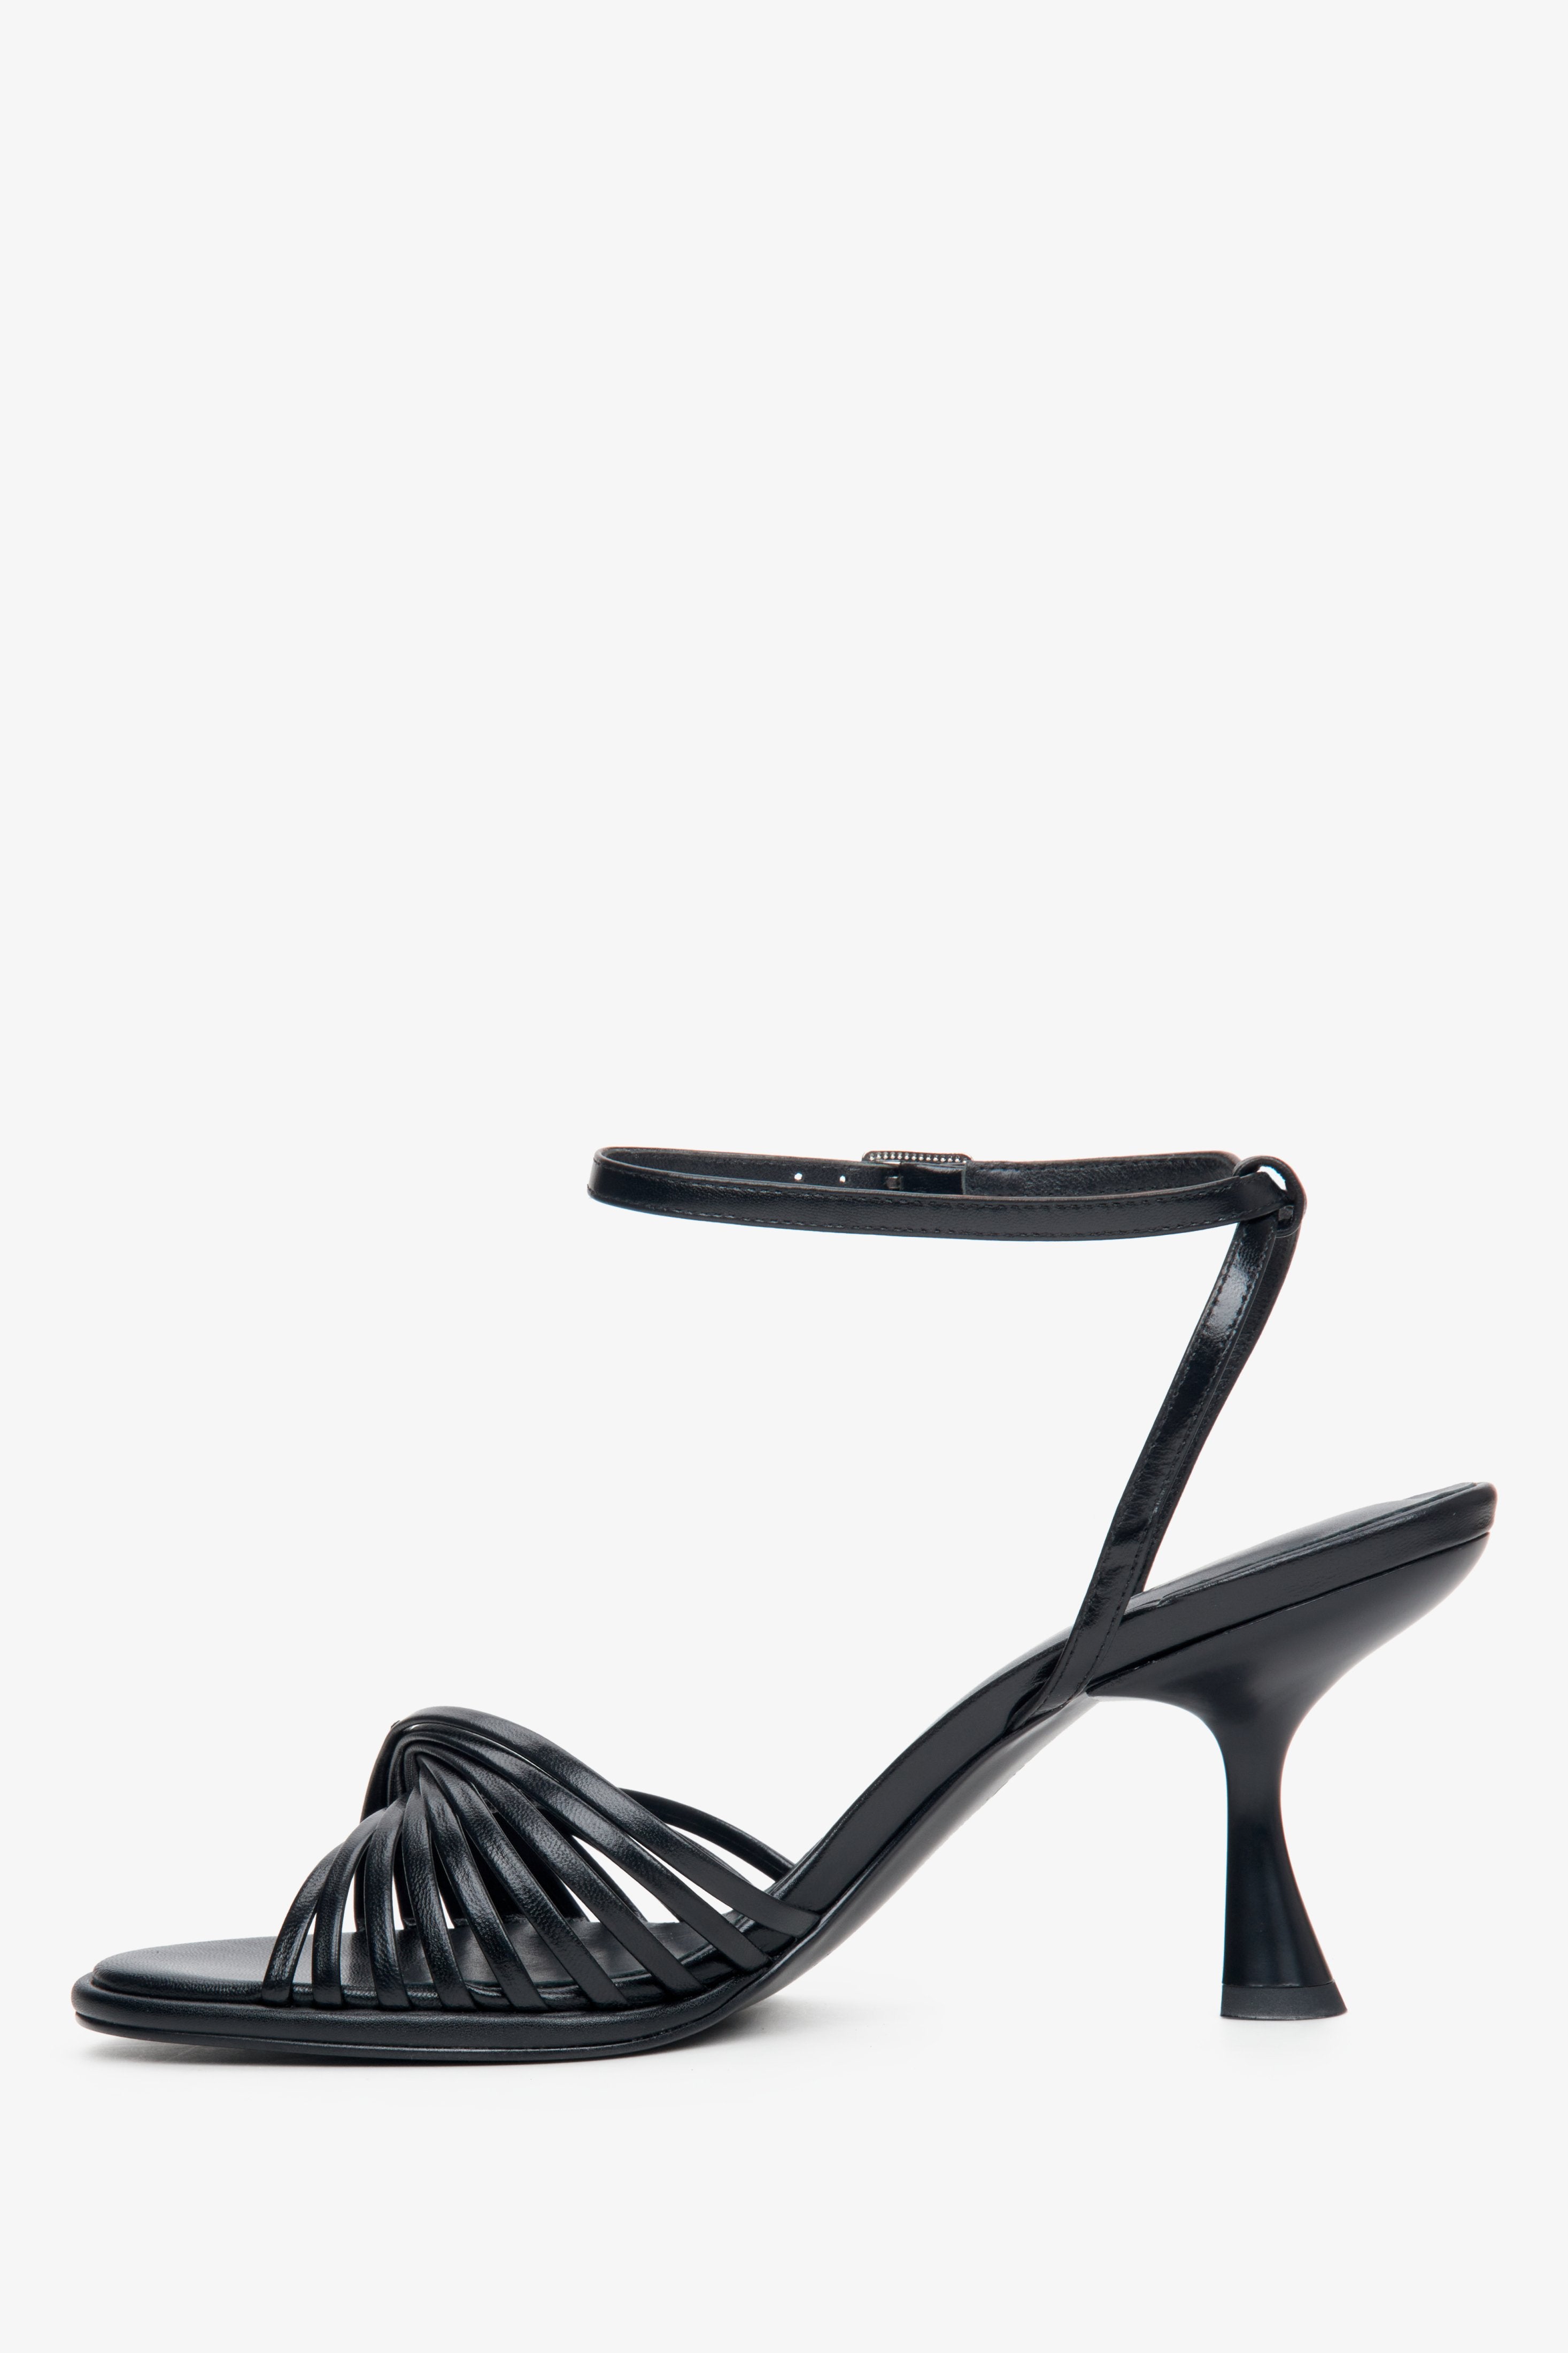 Damskie skórzane sandały damskie na stabilnym obcasie w kolorze czarnym - profil buta.